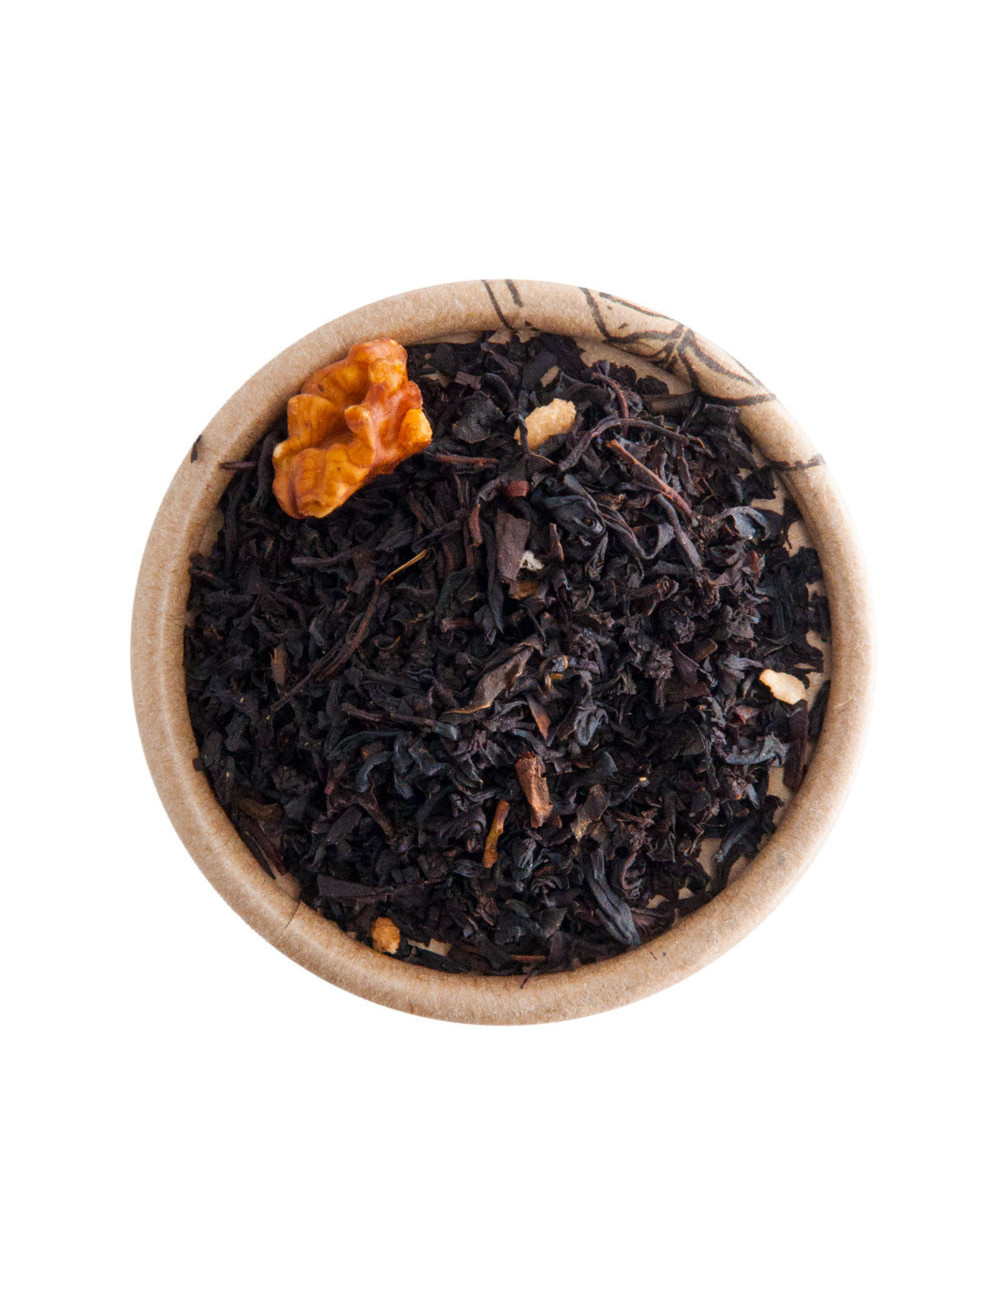 Noce e Manna tè nero aromatizzato - La Pianta del Tè shop online